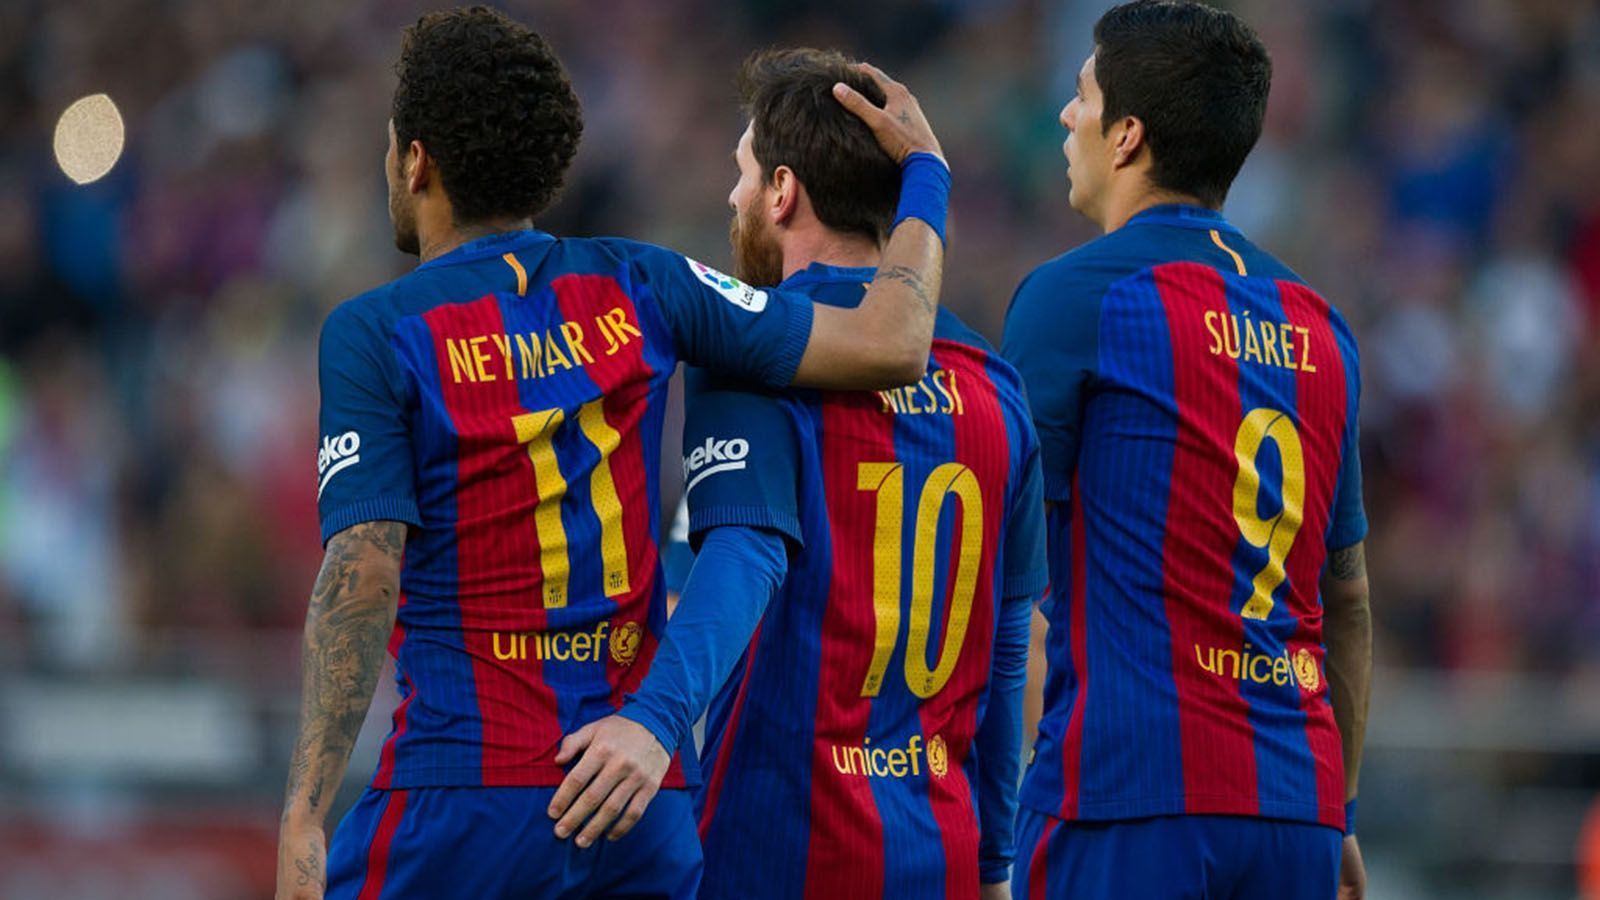 
                <strong>"MSN"</strong><br>
                Lionel Messi, Luis Suarez und Neymar verkörperten wohl wie kein anderes Trio die Offensivkraft des FC Barcelona. In insgesamt 450 Spielen im Zeitraum von 2014 bis 2017 erzielte das Trio "MSN" unglaubliche 364 Treffer. Doch nachdem zunächst Neymar und im Sommer 2020 Suarez gingen, verließ nun in diesem Jahr mit Messi auch der letzte Bestandteil des Traumtrios die Katalanen. Ihre Nachfolger müssen sich nun am Giganten-Trio messen lassen und können dabei wohl nur verlieren. Doch das Potenzial für eine ordentliche Torflut ist zumindest vorhanden. 
              